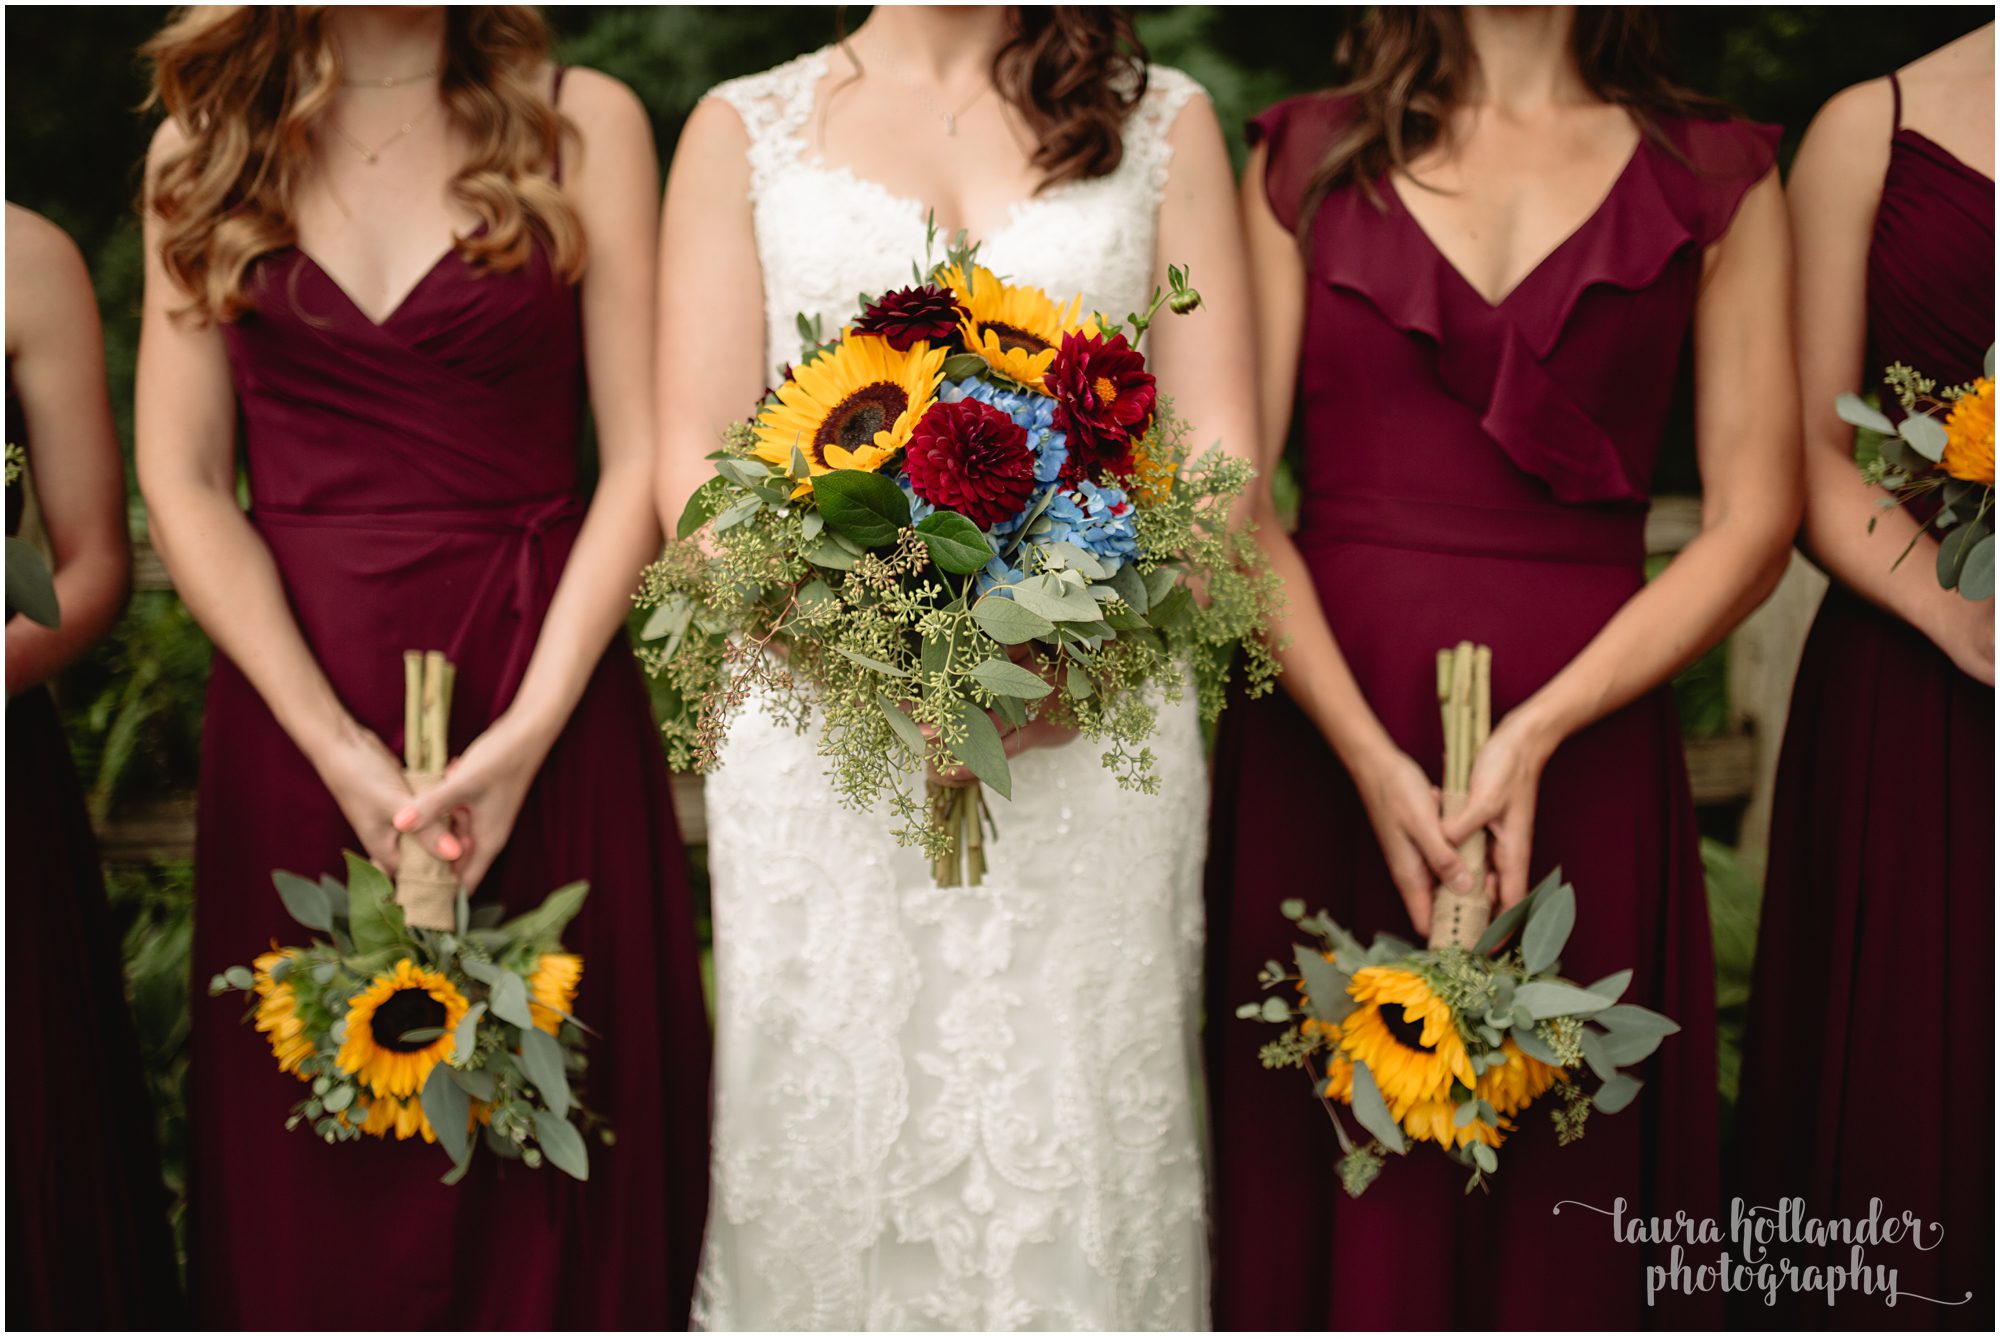 bridal portraits, lawton community center wedding, bridesmaids, burgundy dresses, sunflower bouquets